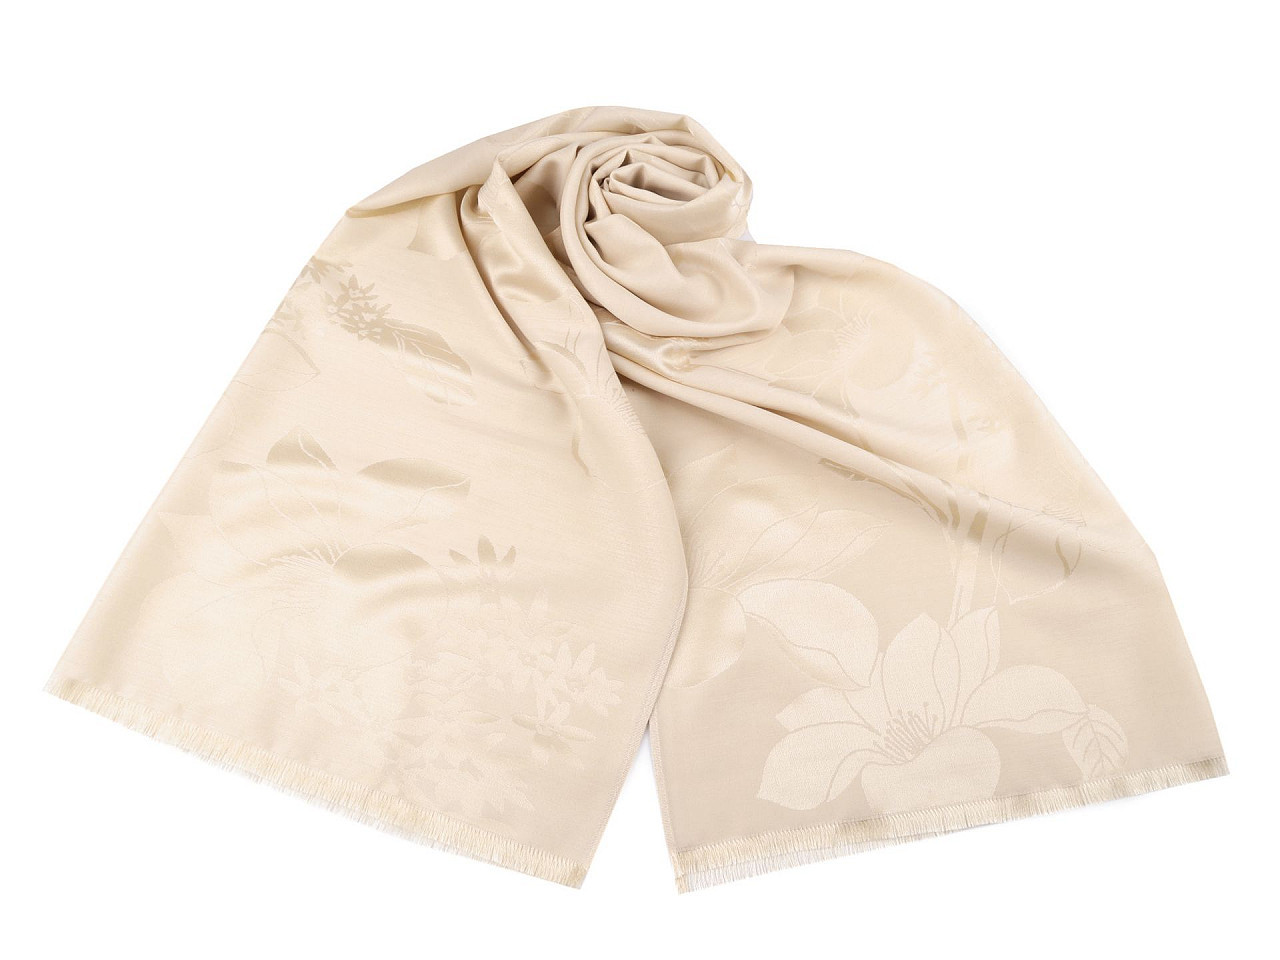 Šátek / šála s květy typu pashmina 74x185 cm, barva 1 krémová